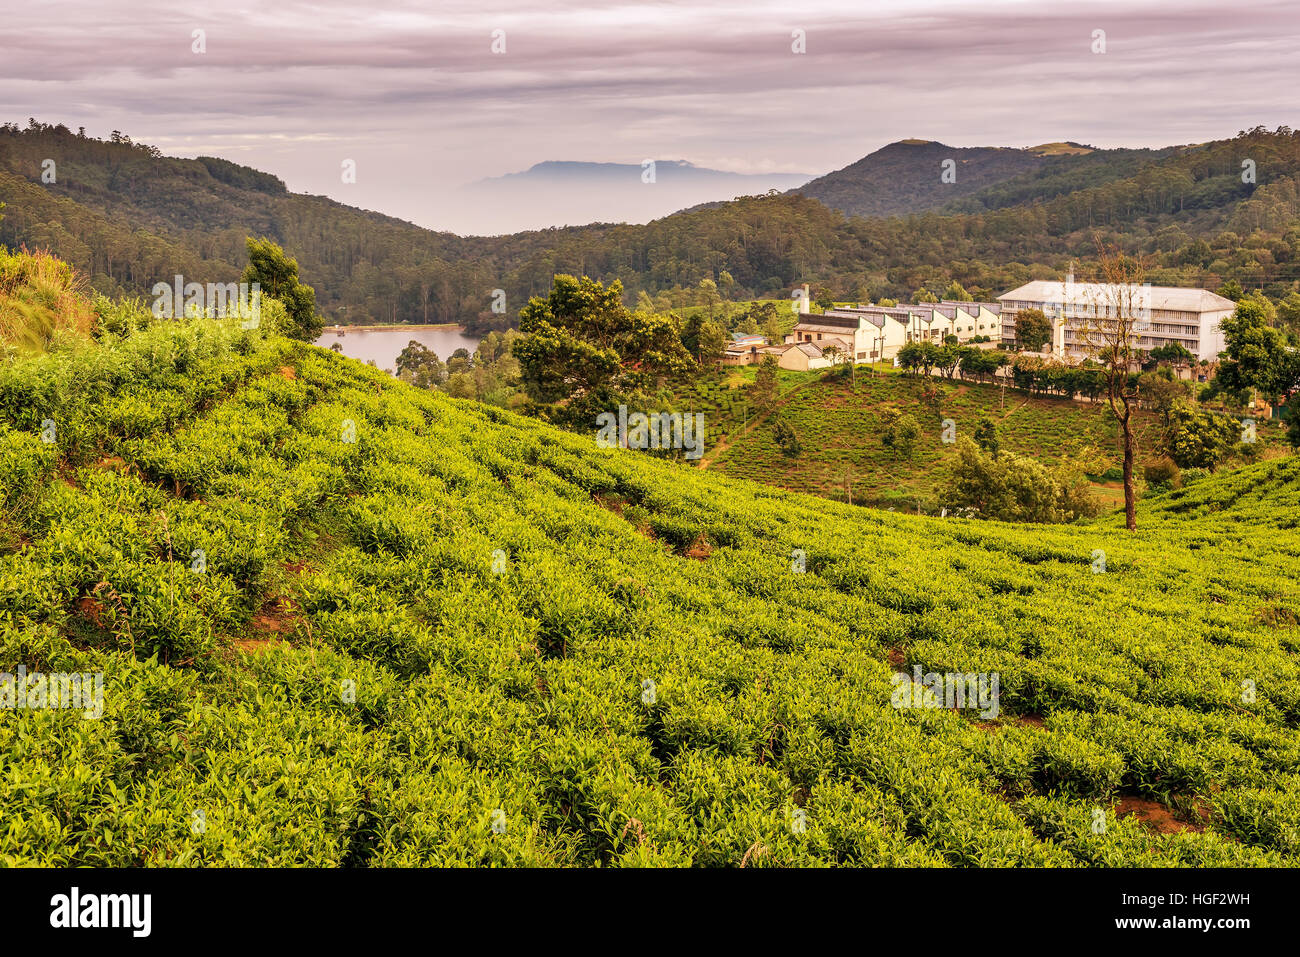 Sri Lanka: famous Ceylon highland tea fields Stock Photo